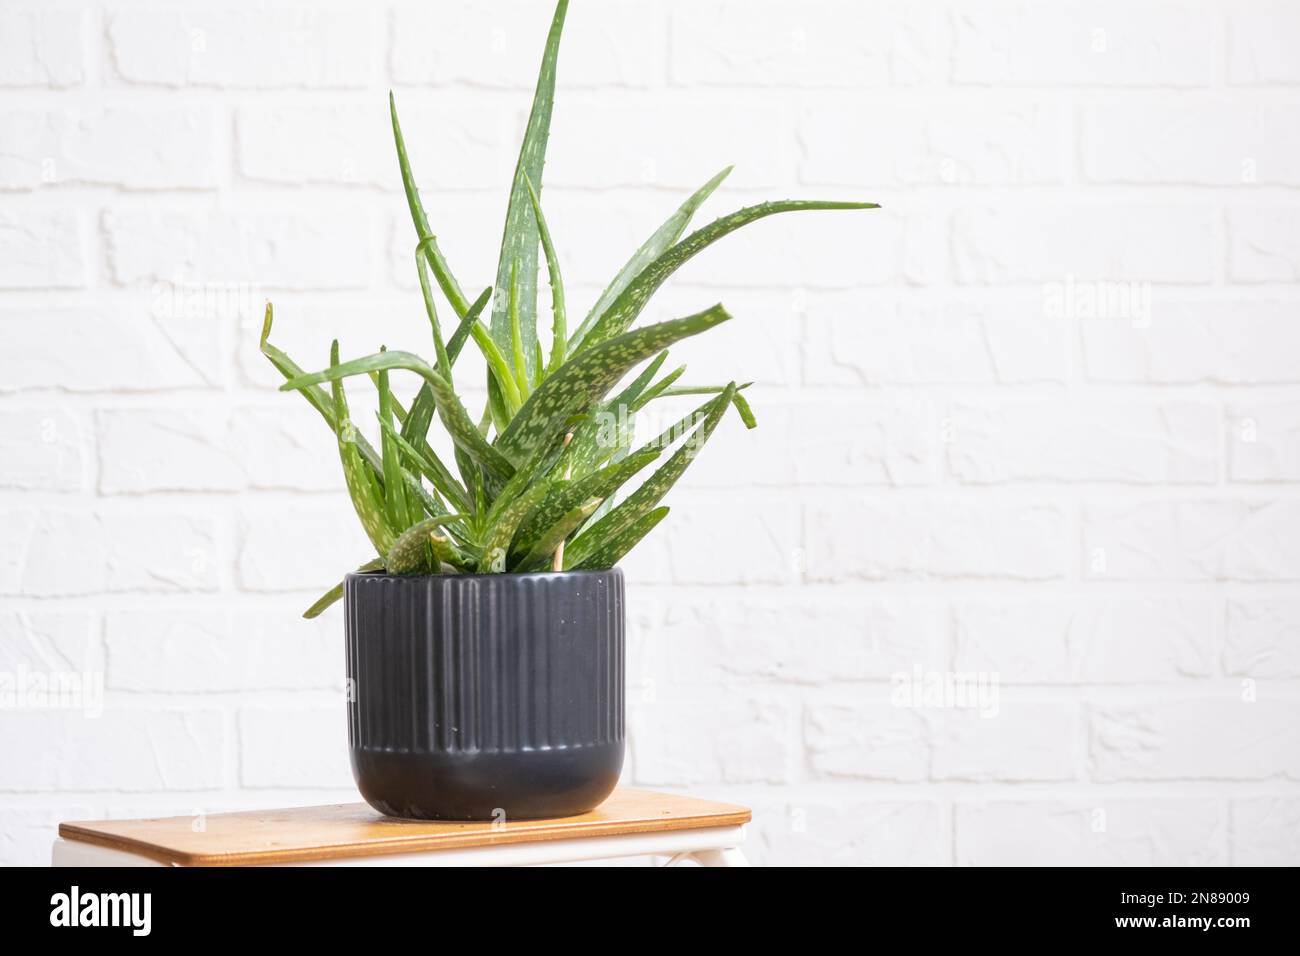 L'aloe vera è una pianta medicinale utile all'interno della parete di mattoni di whtite. Piante in vaso casa, arredamento verde casa, cura e coltivazione Foto Stock